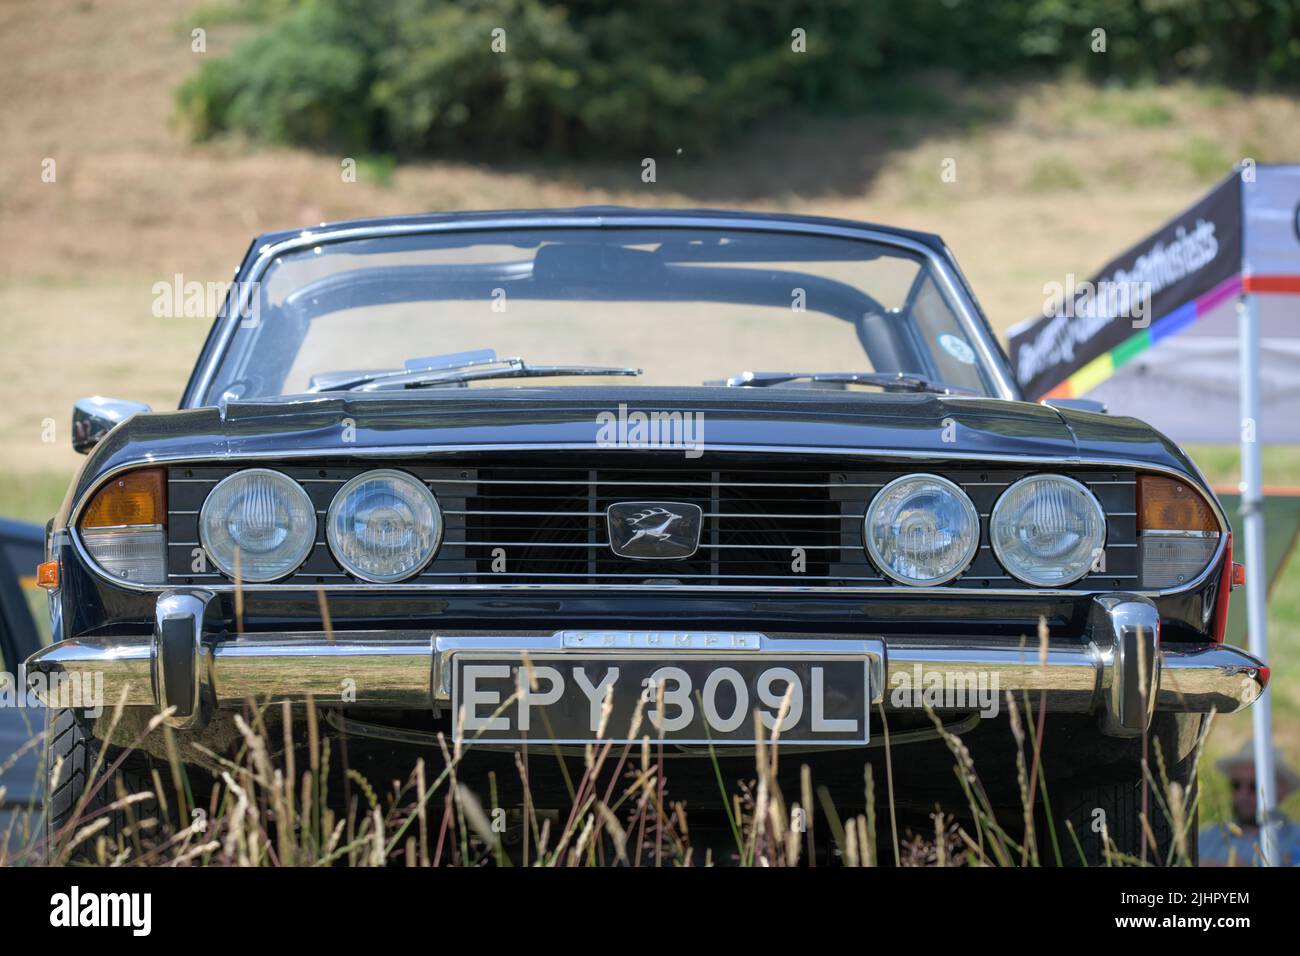 Vista frontale di una Triumph Stag nera e convertibile del 1970s nel mezzo di erba lunga Foto Stock